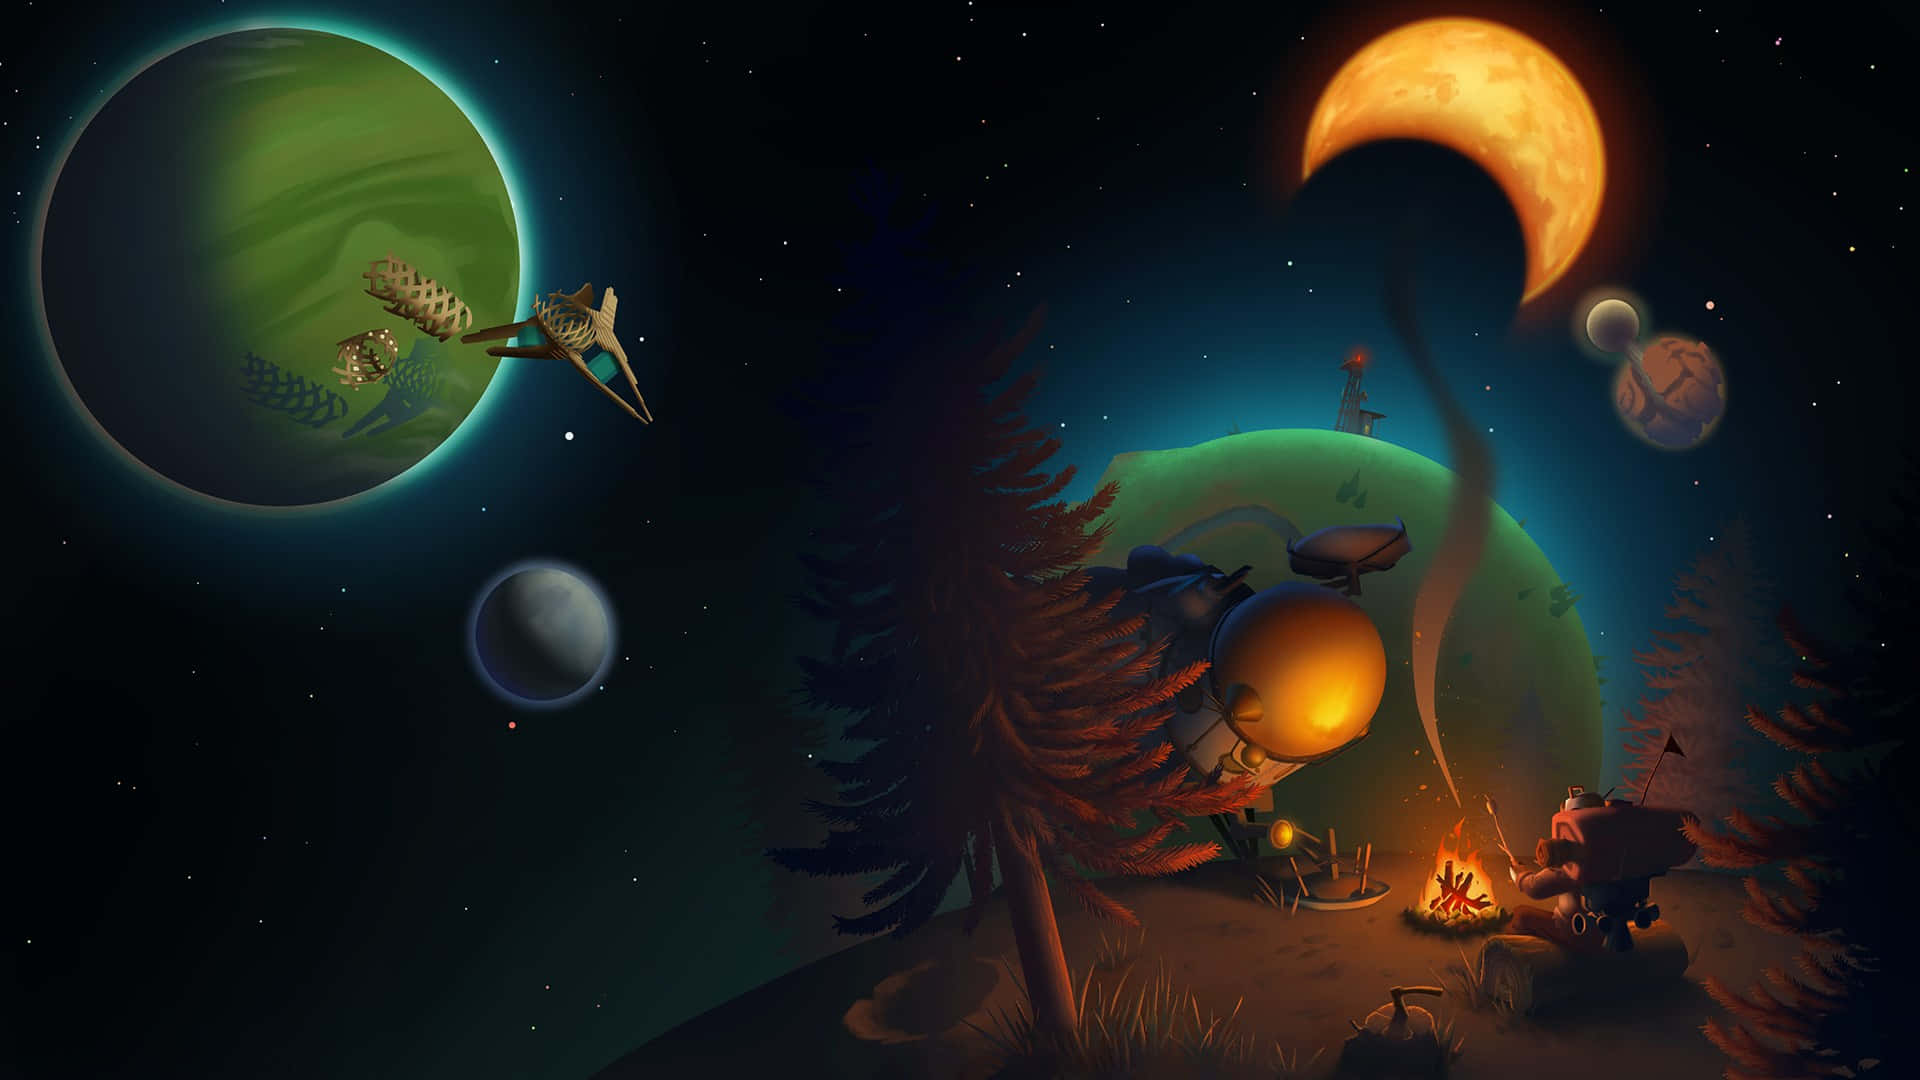 Udforsk et fremmed solsystem fyldt med mysterium og farlige hemmeligheder i Outer Wilds. Wallpaper